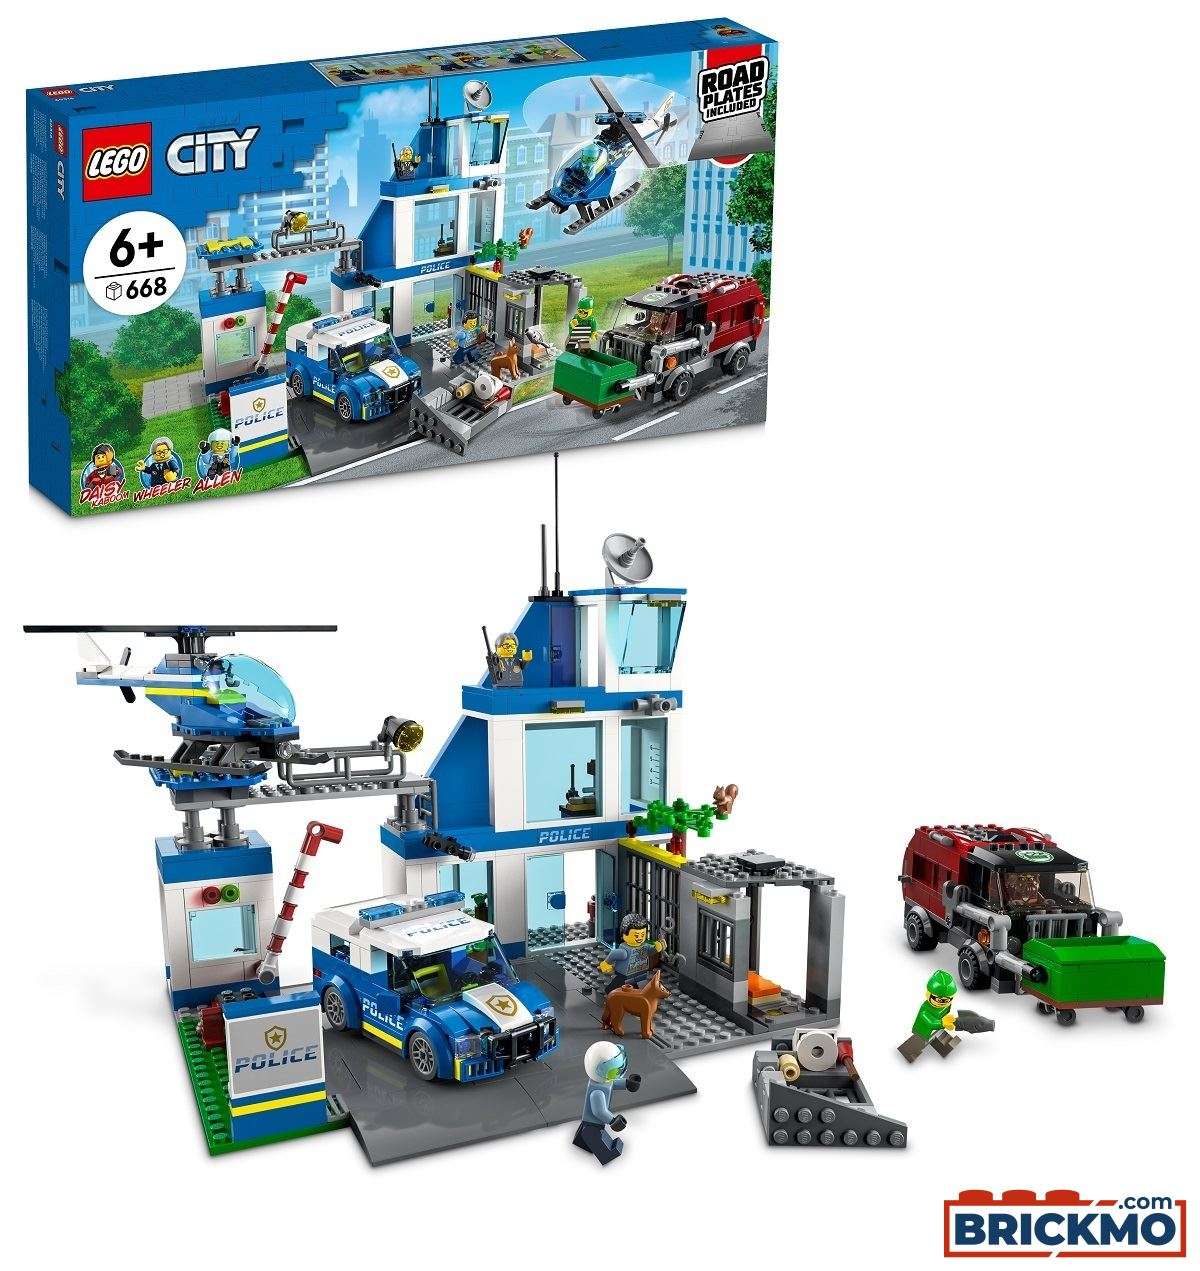 LEGO City 60316 Polizeistation 60316